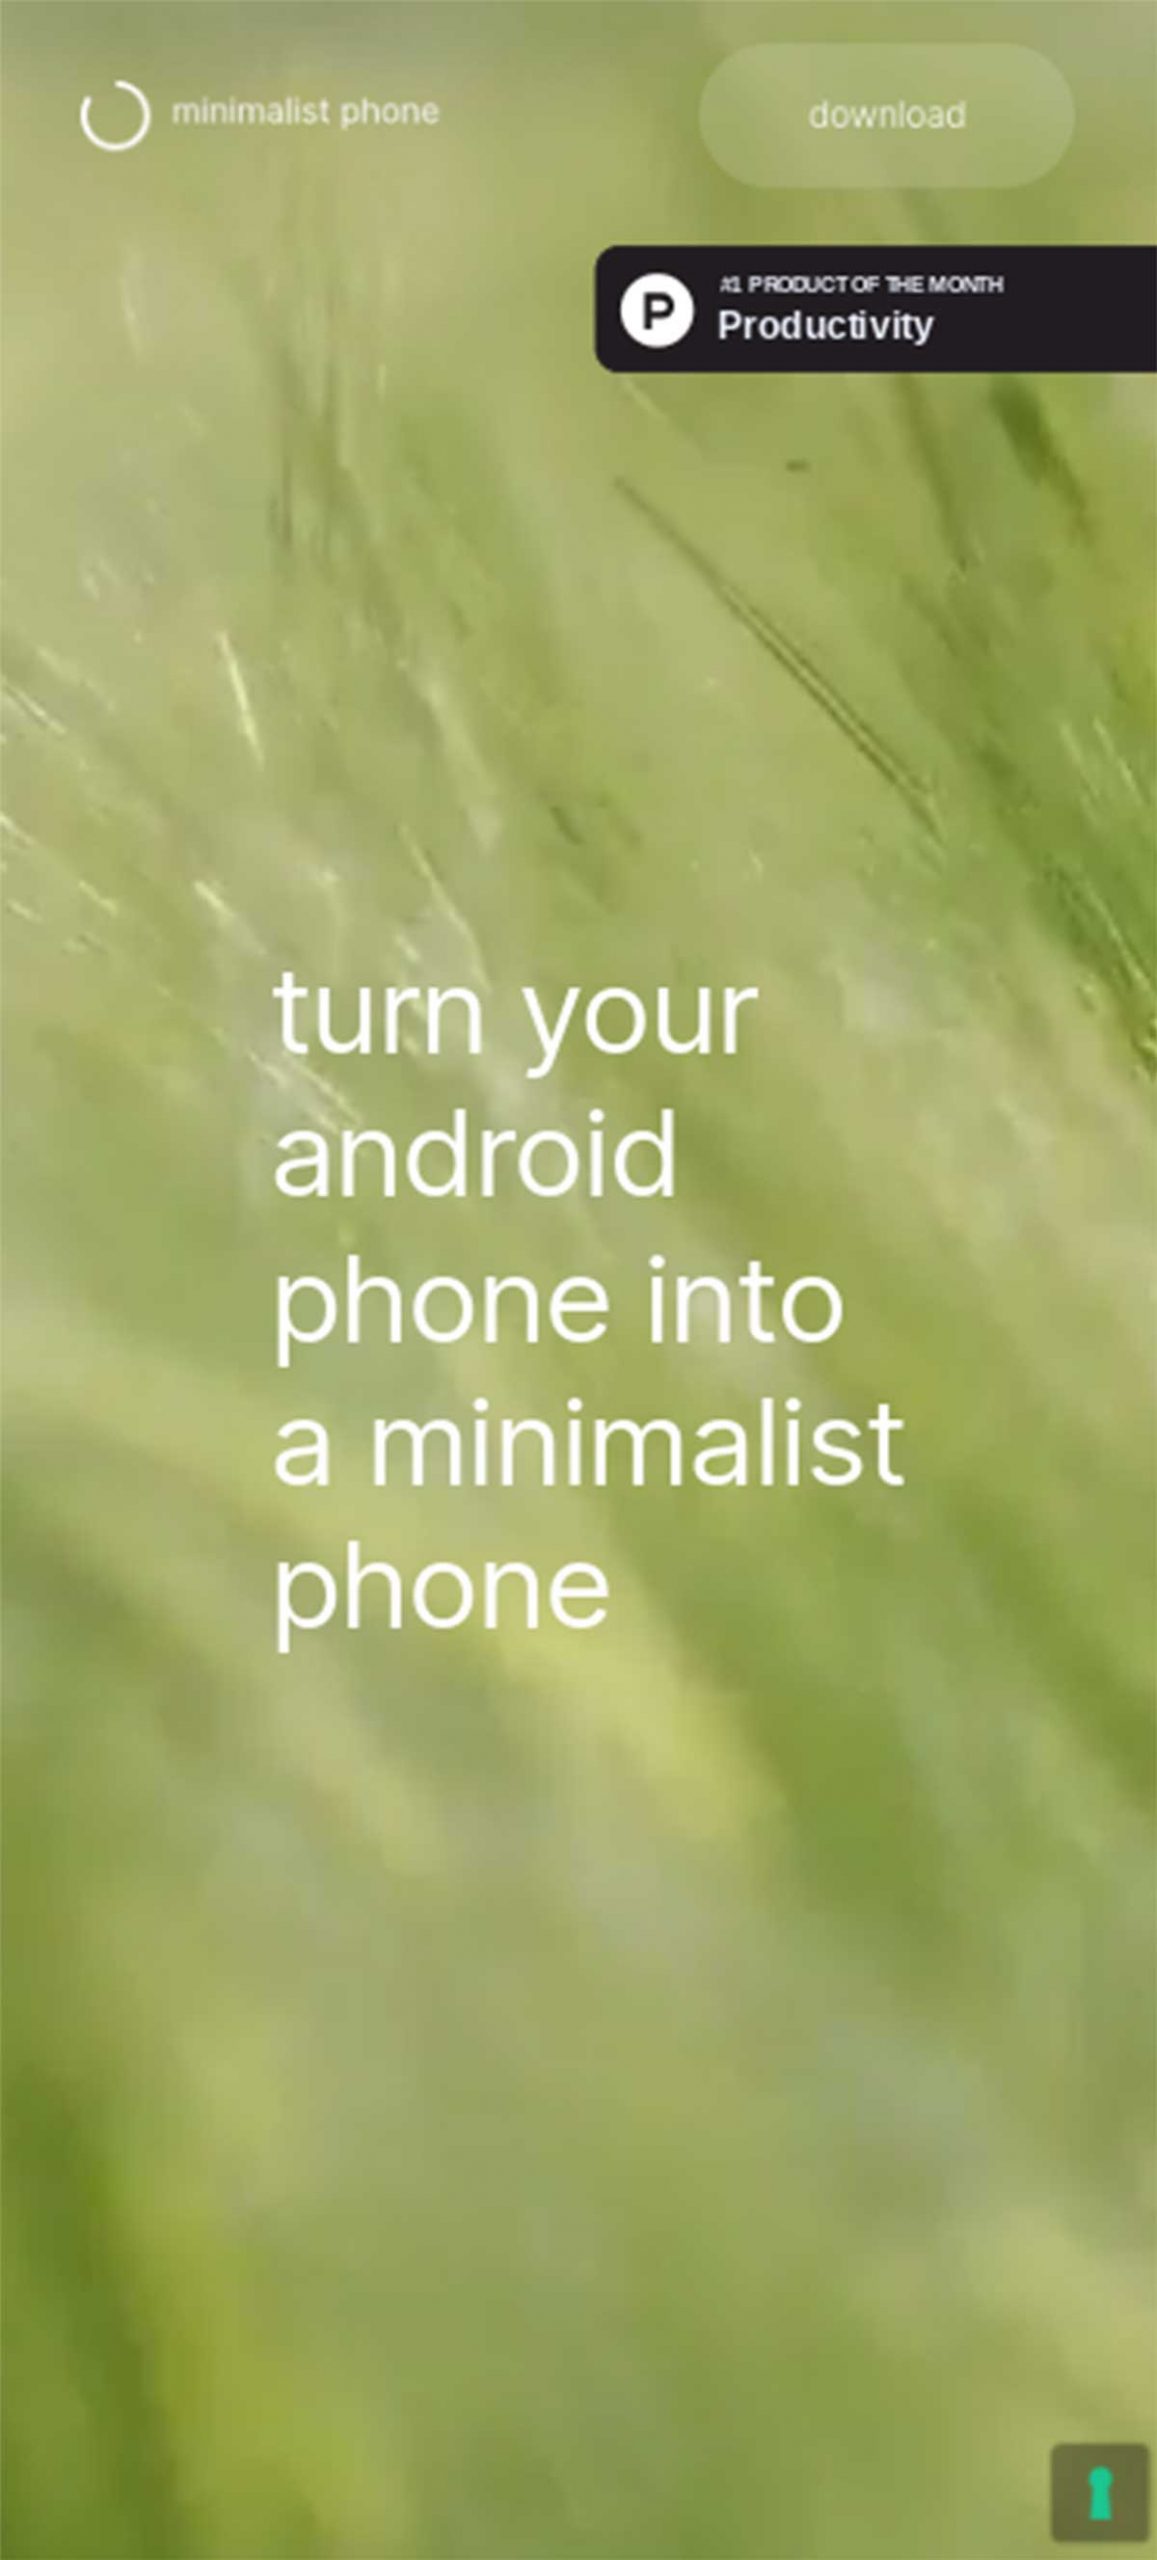 Minimalist phone